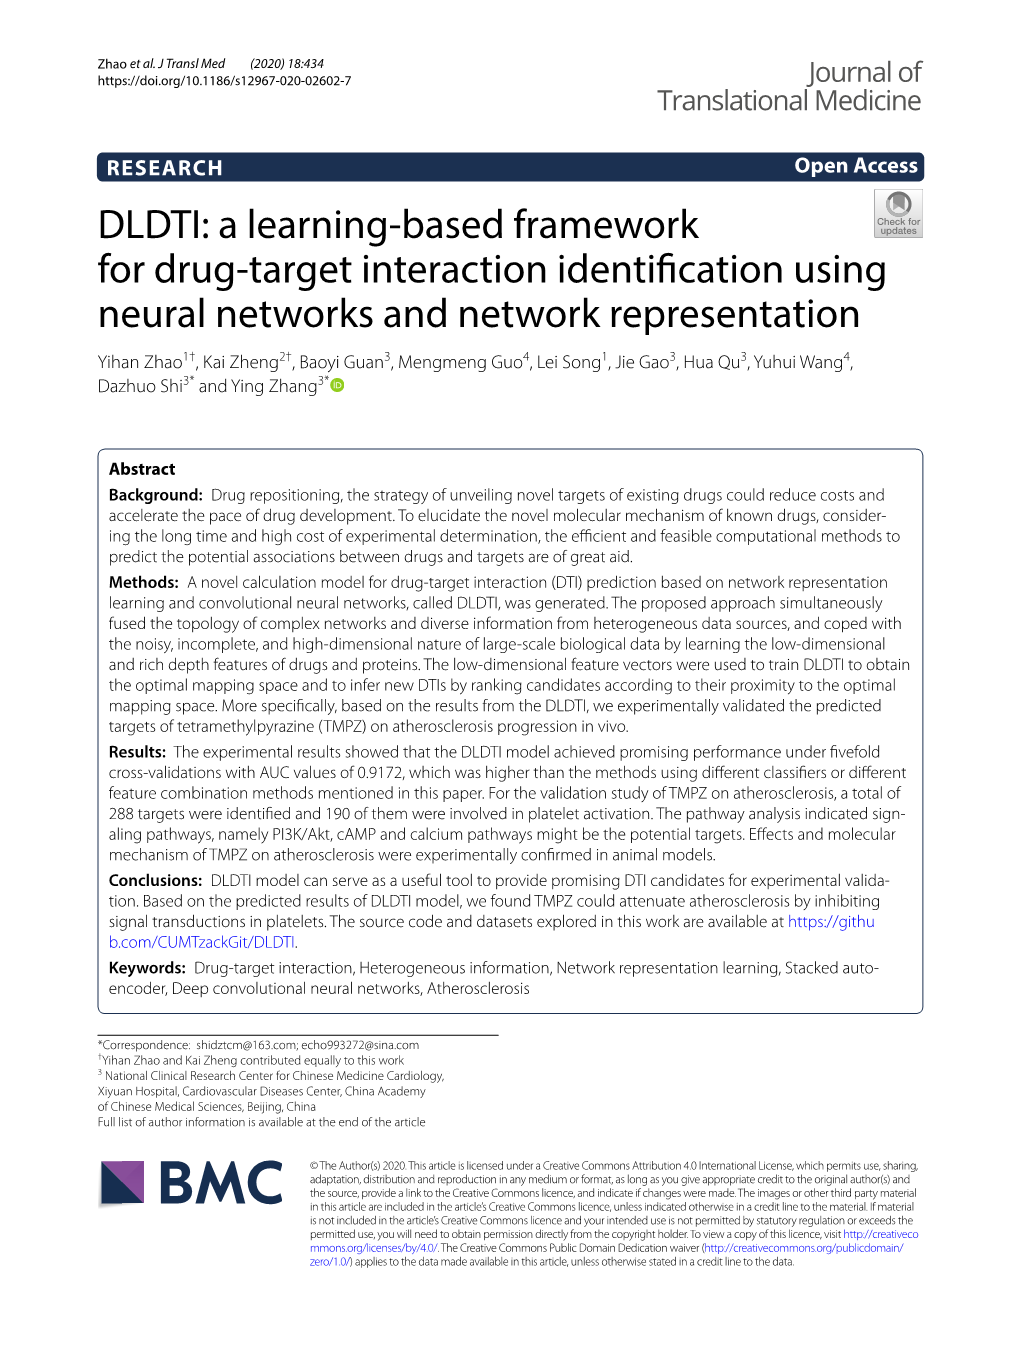 DLDTI: a Learning-Based Framework for Drug-Target Interaction